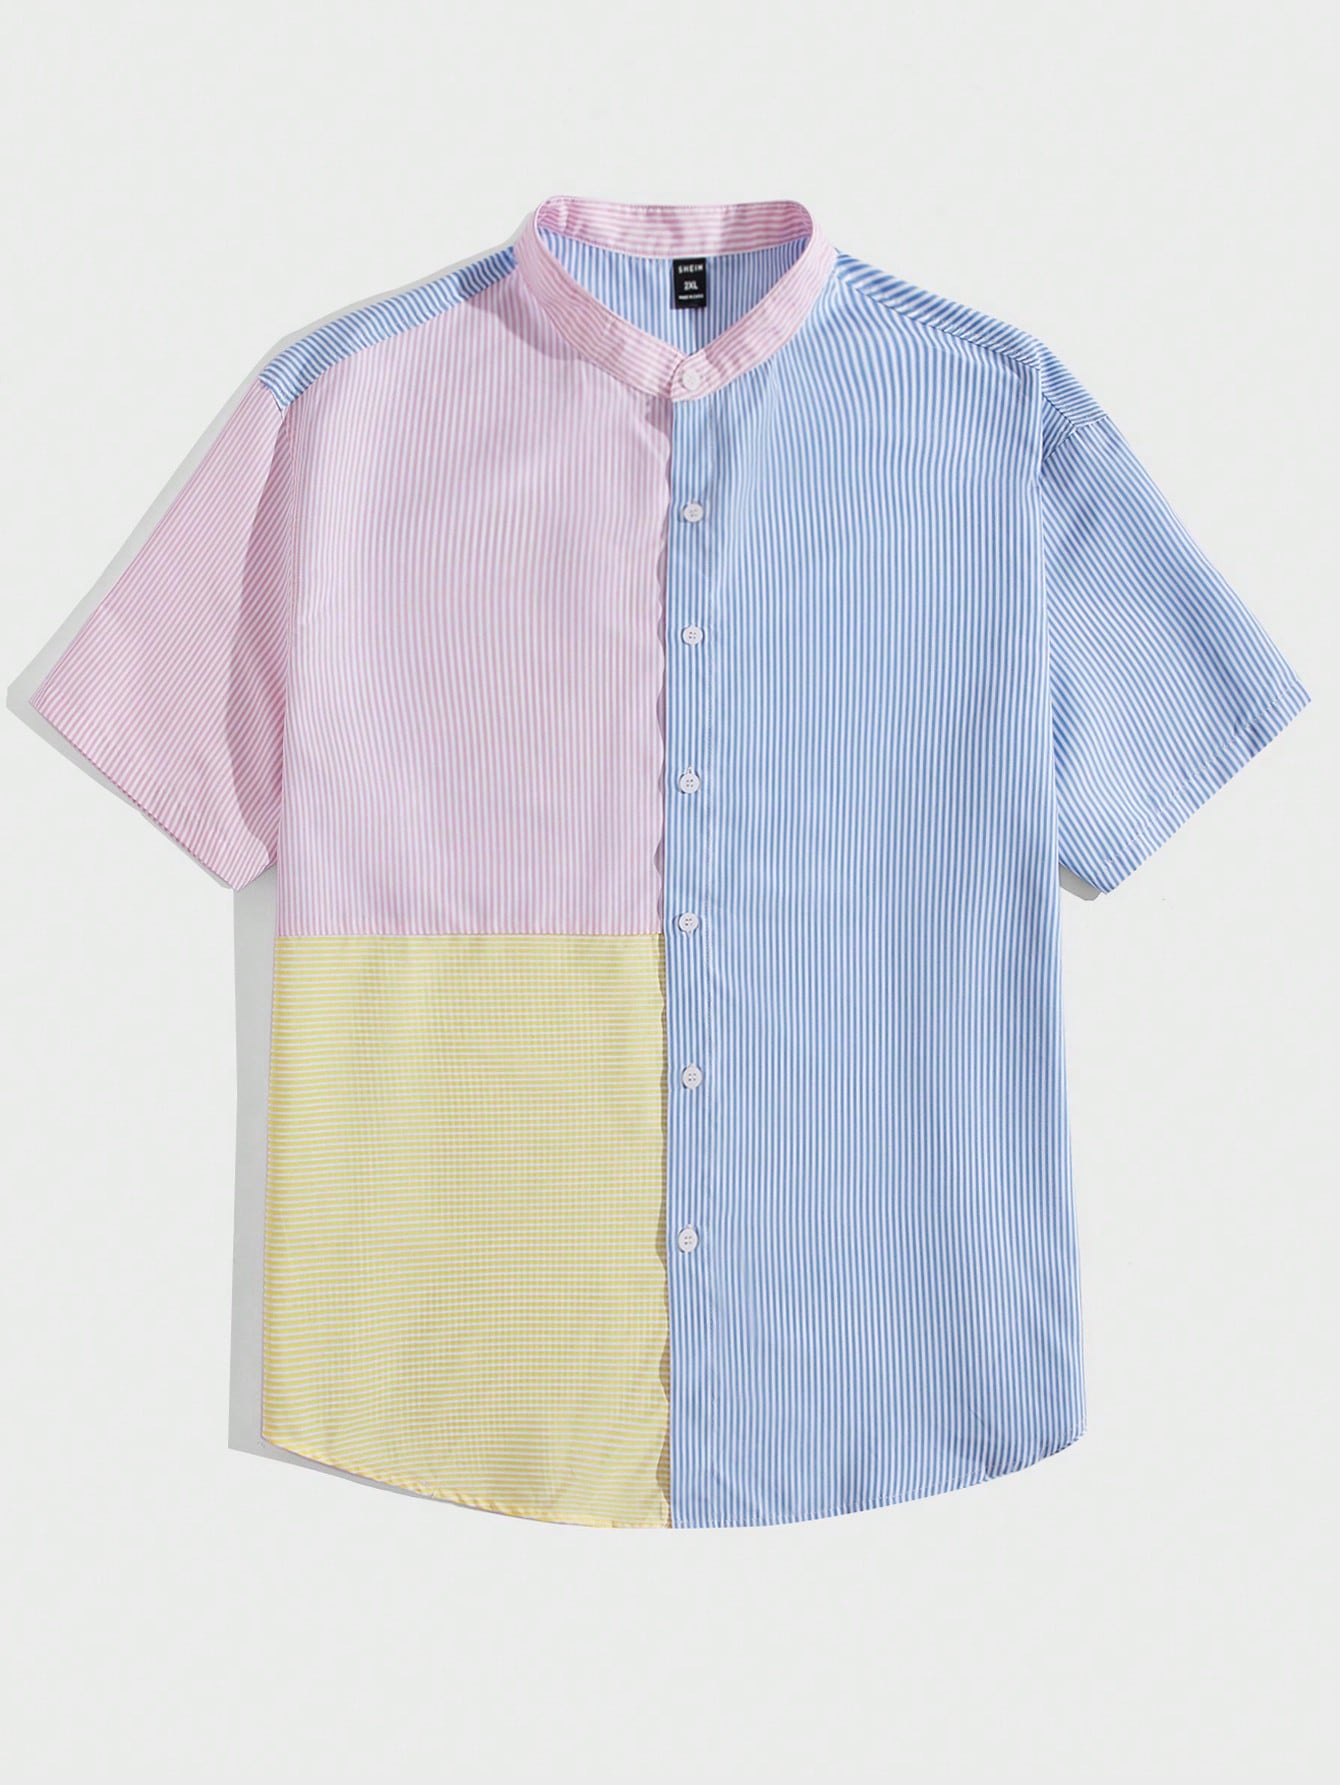 Мужская рубашка в полоску с цветными блоками Manfinity Hypemode Plus, многоцветный